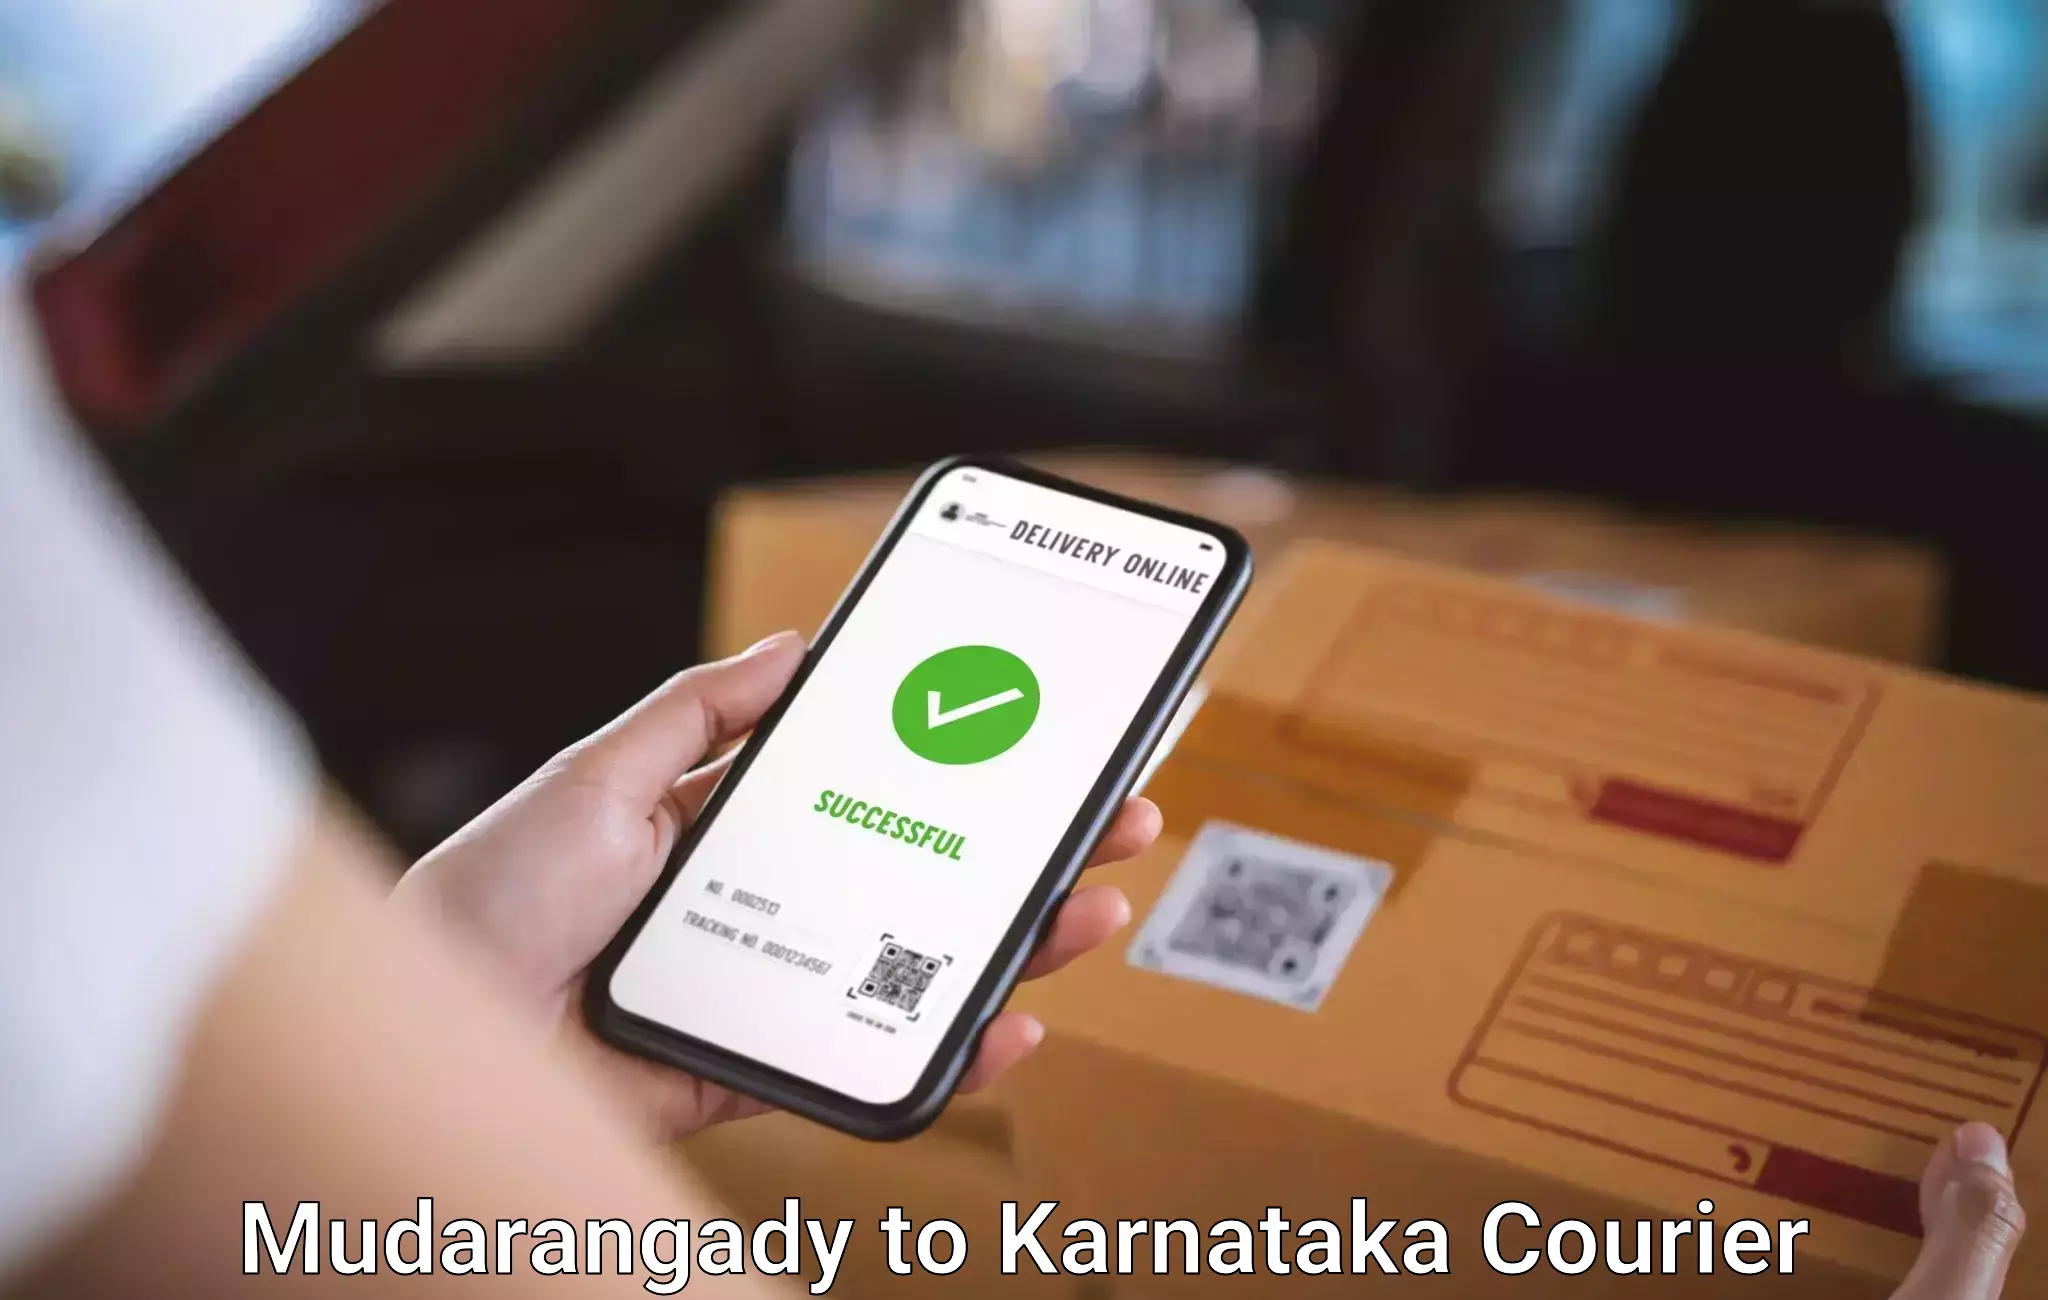 Baggage courier FAQs Mudarangady to Karnataka